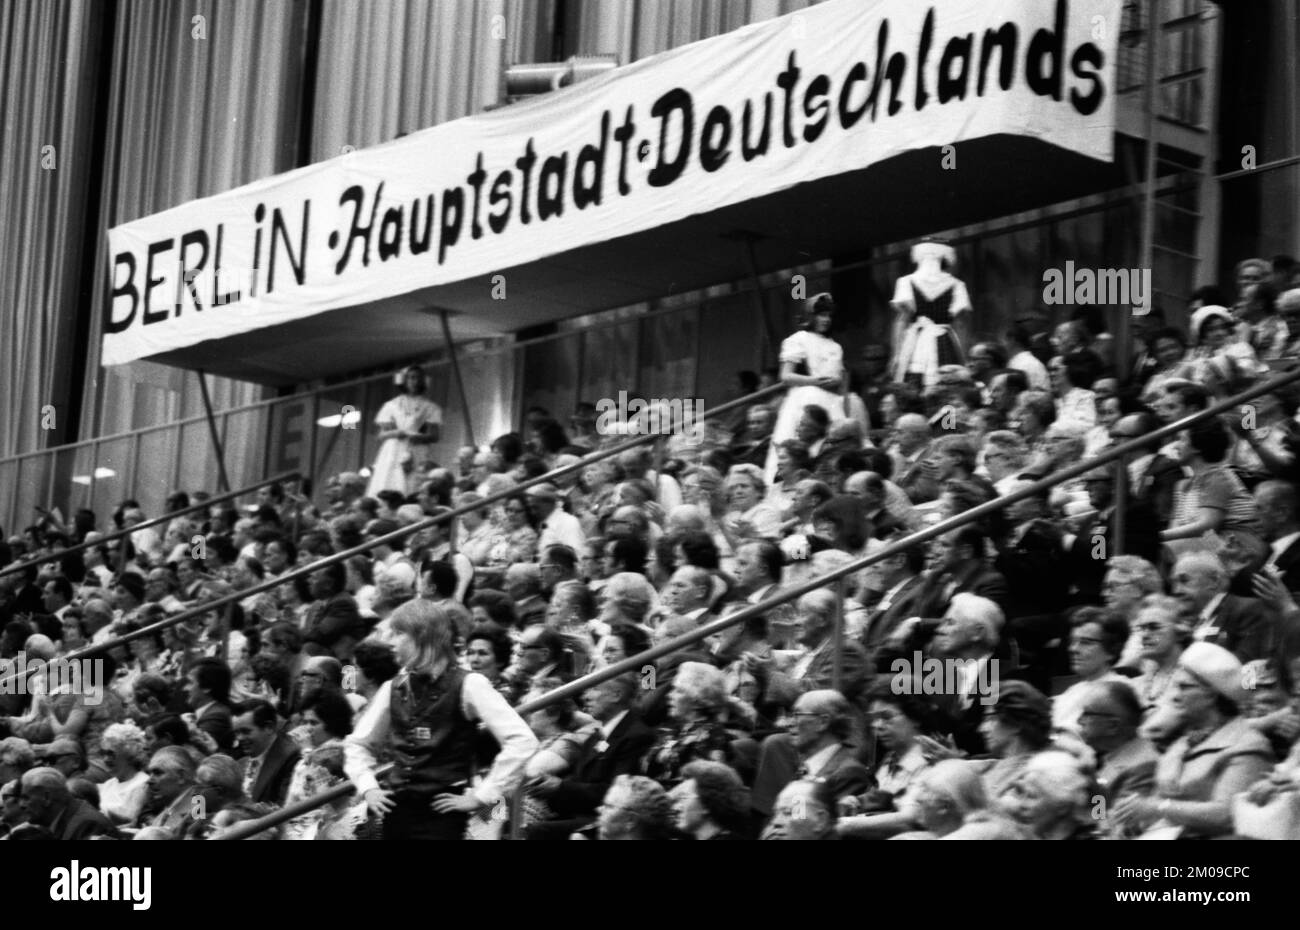 La réunion du Landsmannschaft Schlesien der Vertriebenenverbaende le 16.05.1975 dans la Grugahalle à Essen, Allemagne, Europe Banque D'Images